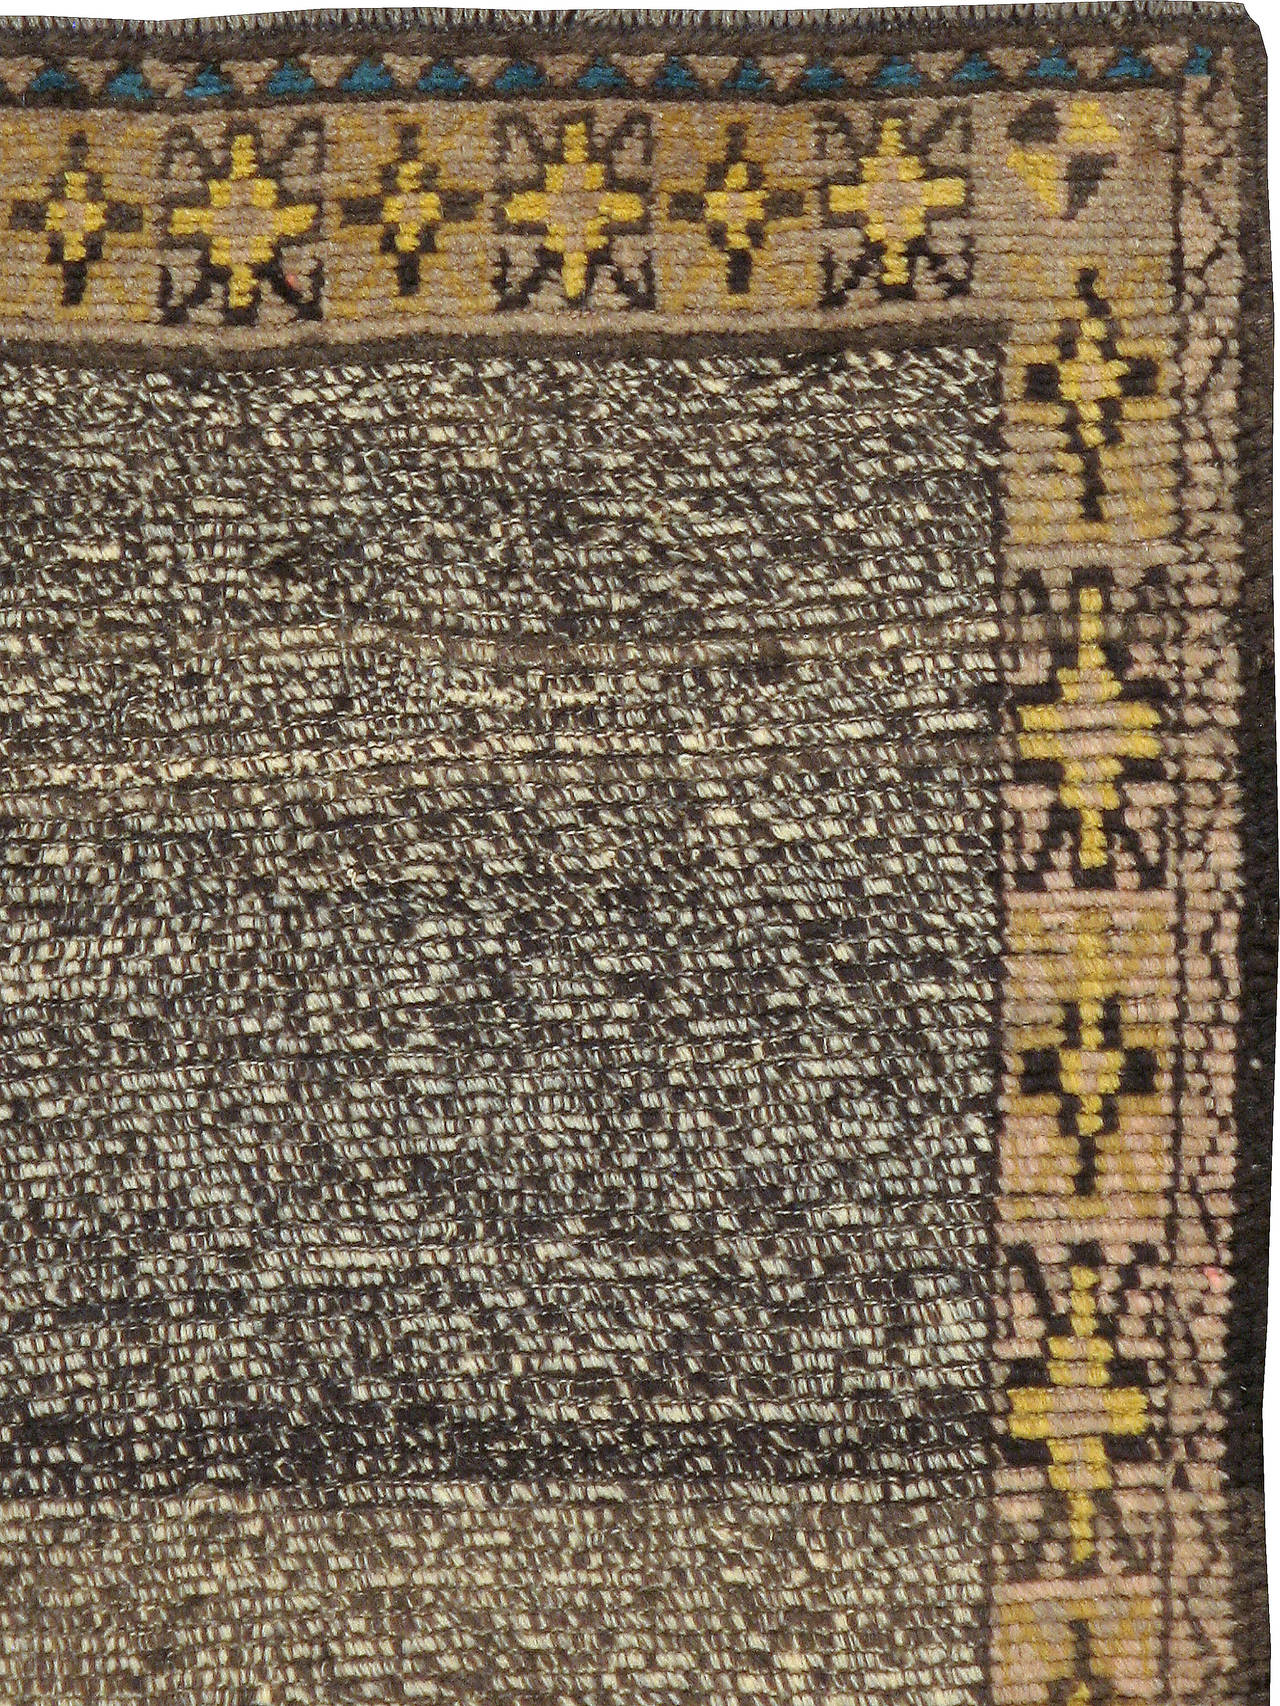 Ein alter türkischer Konya-Teppich aus dem zweiten Viertel des 20. Jahrhunderts. Der Großraum Konya in der Türkei ist bekannt für die Herstellung einiger der luxuriösesten Wolle der Welt. Die nomadischen Konya-Teppiche werden oft als das türkische